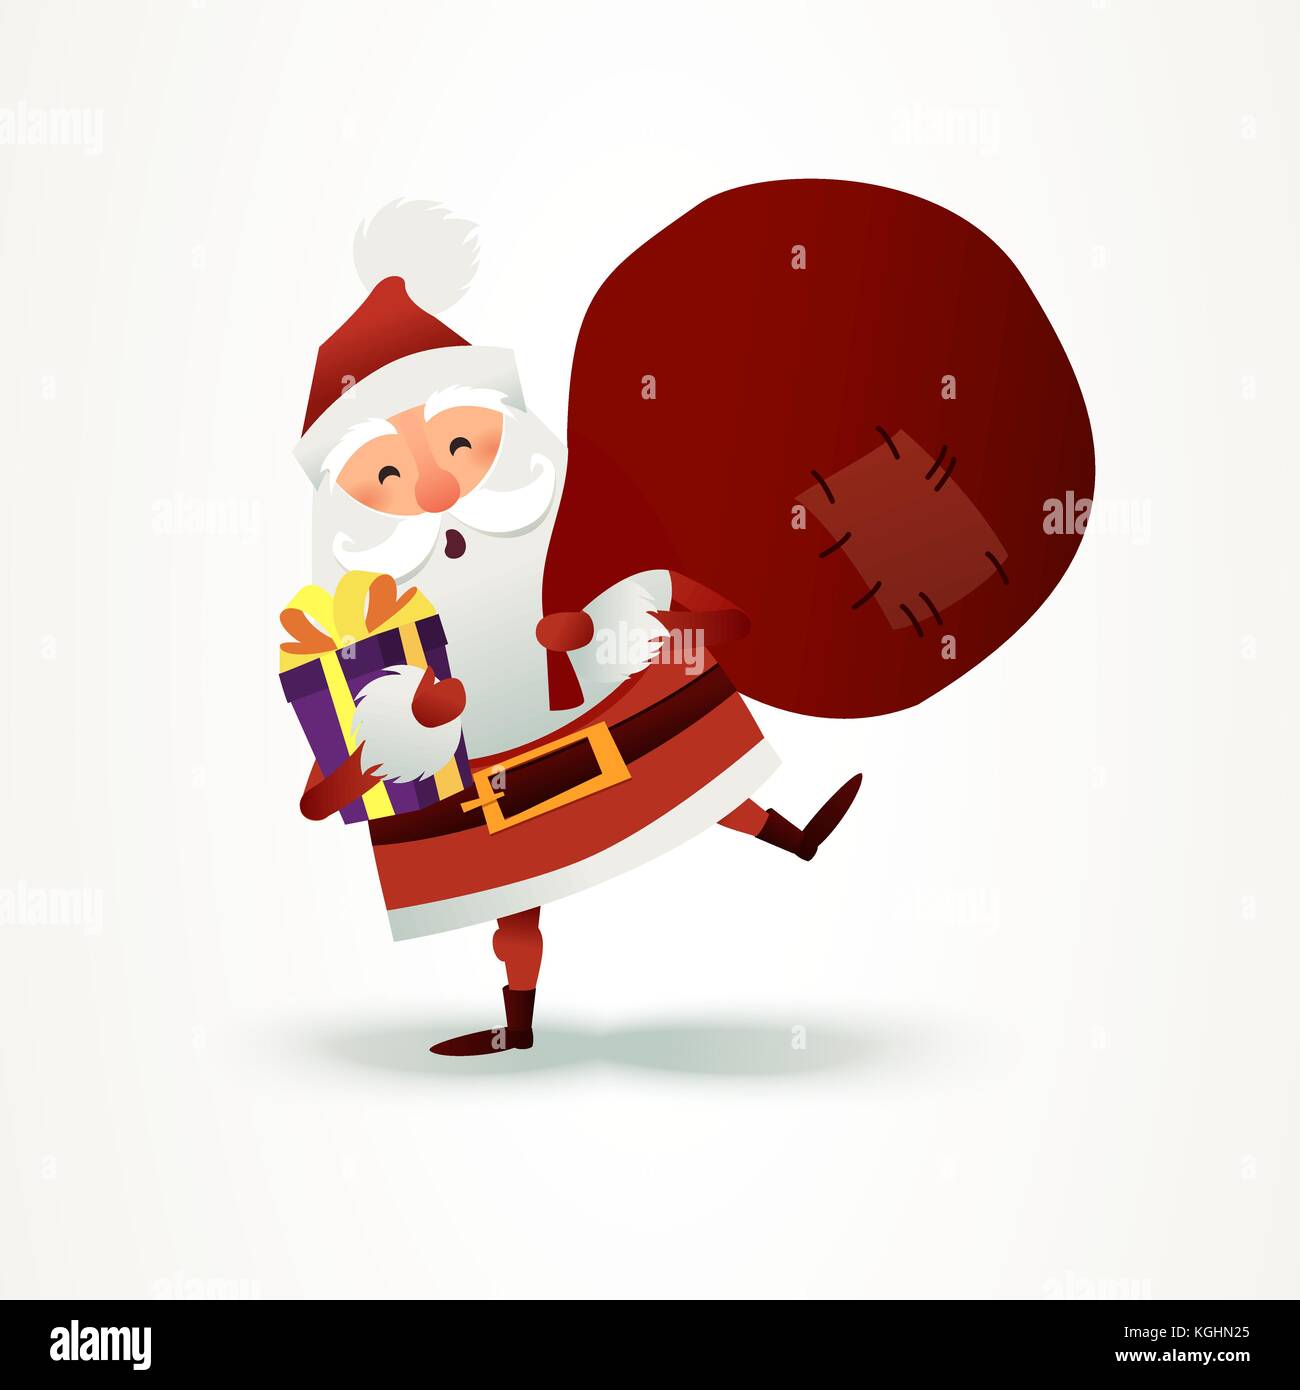 Weihnachtsmann mit Sack voller Geschenk und Geschenkbox. Frohe Weihnachten Vater Cartoon-Figur. Niedlicher Weihnachtsmann für das Weihnachtsdesign. Grußkarte für das neue Jahr zur Einladung, herzlichen Glückwunsch. Flache Vektorgrafik. Ho, Ho, Ho Stock Vektor